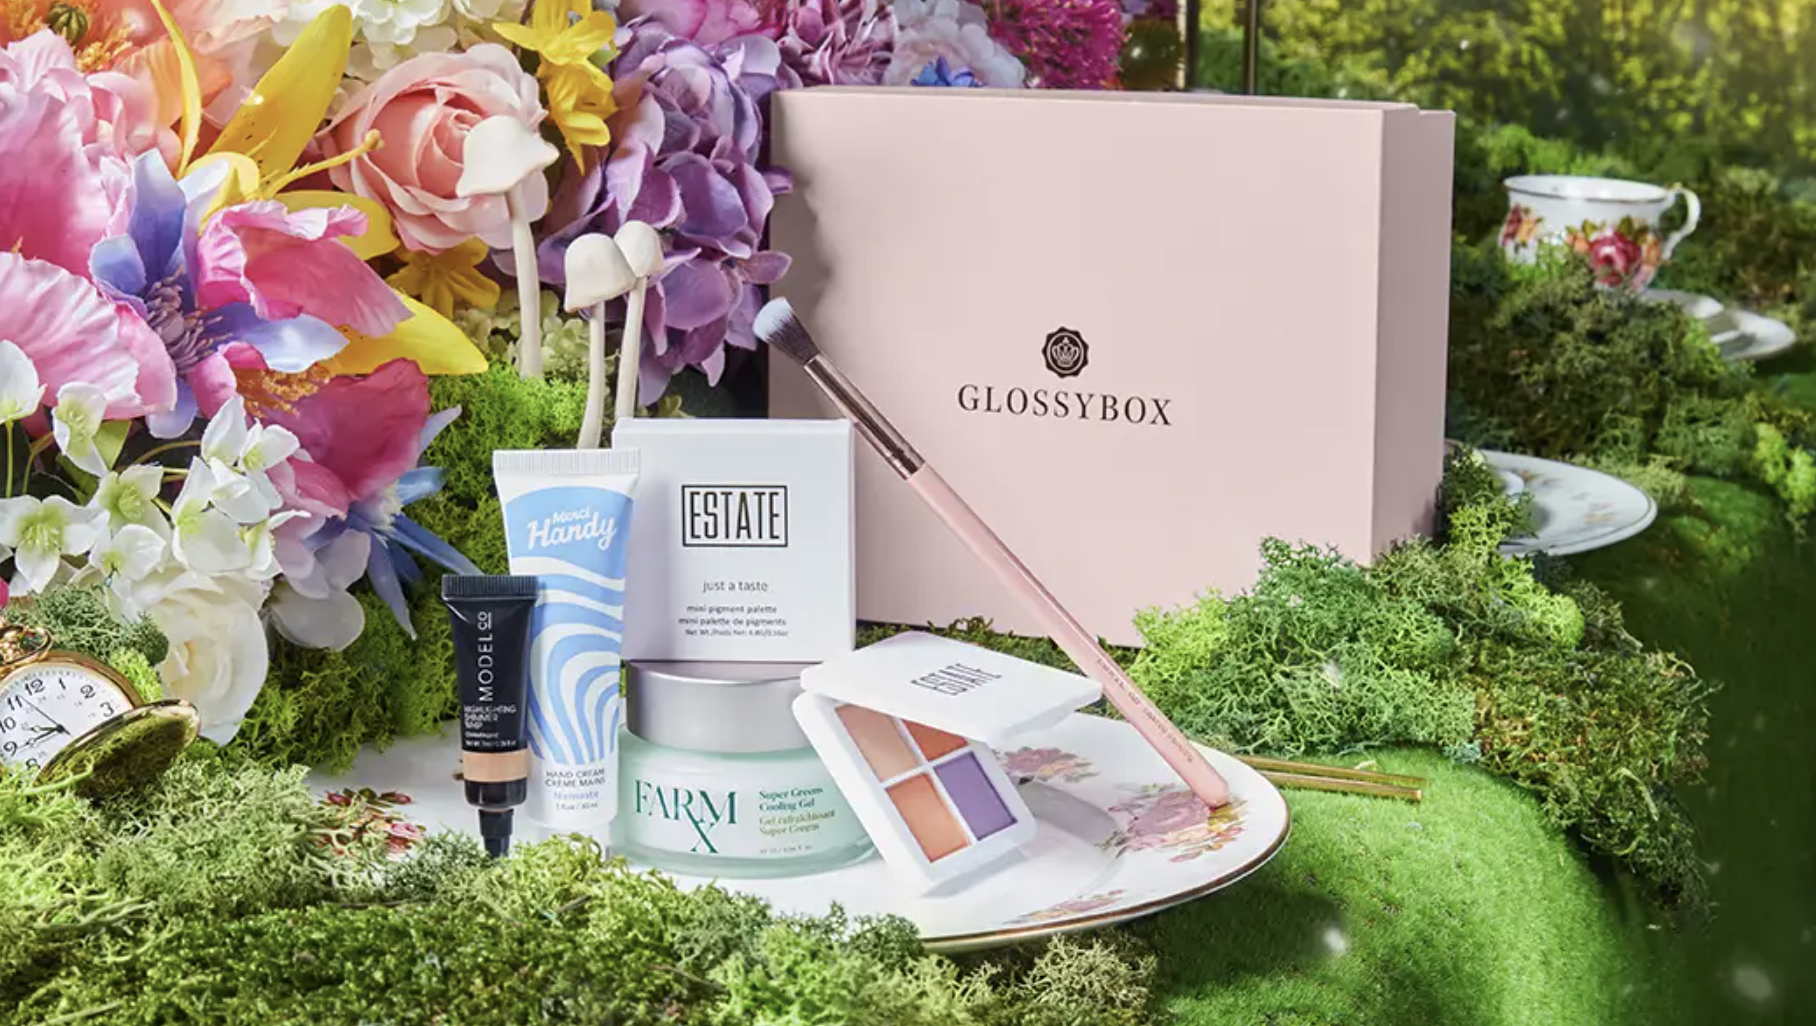 Glossybox March beauty box